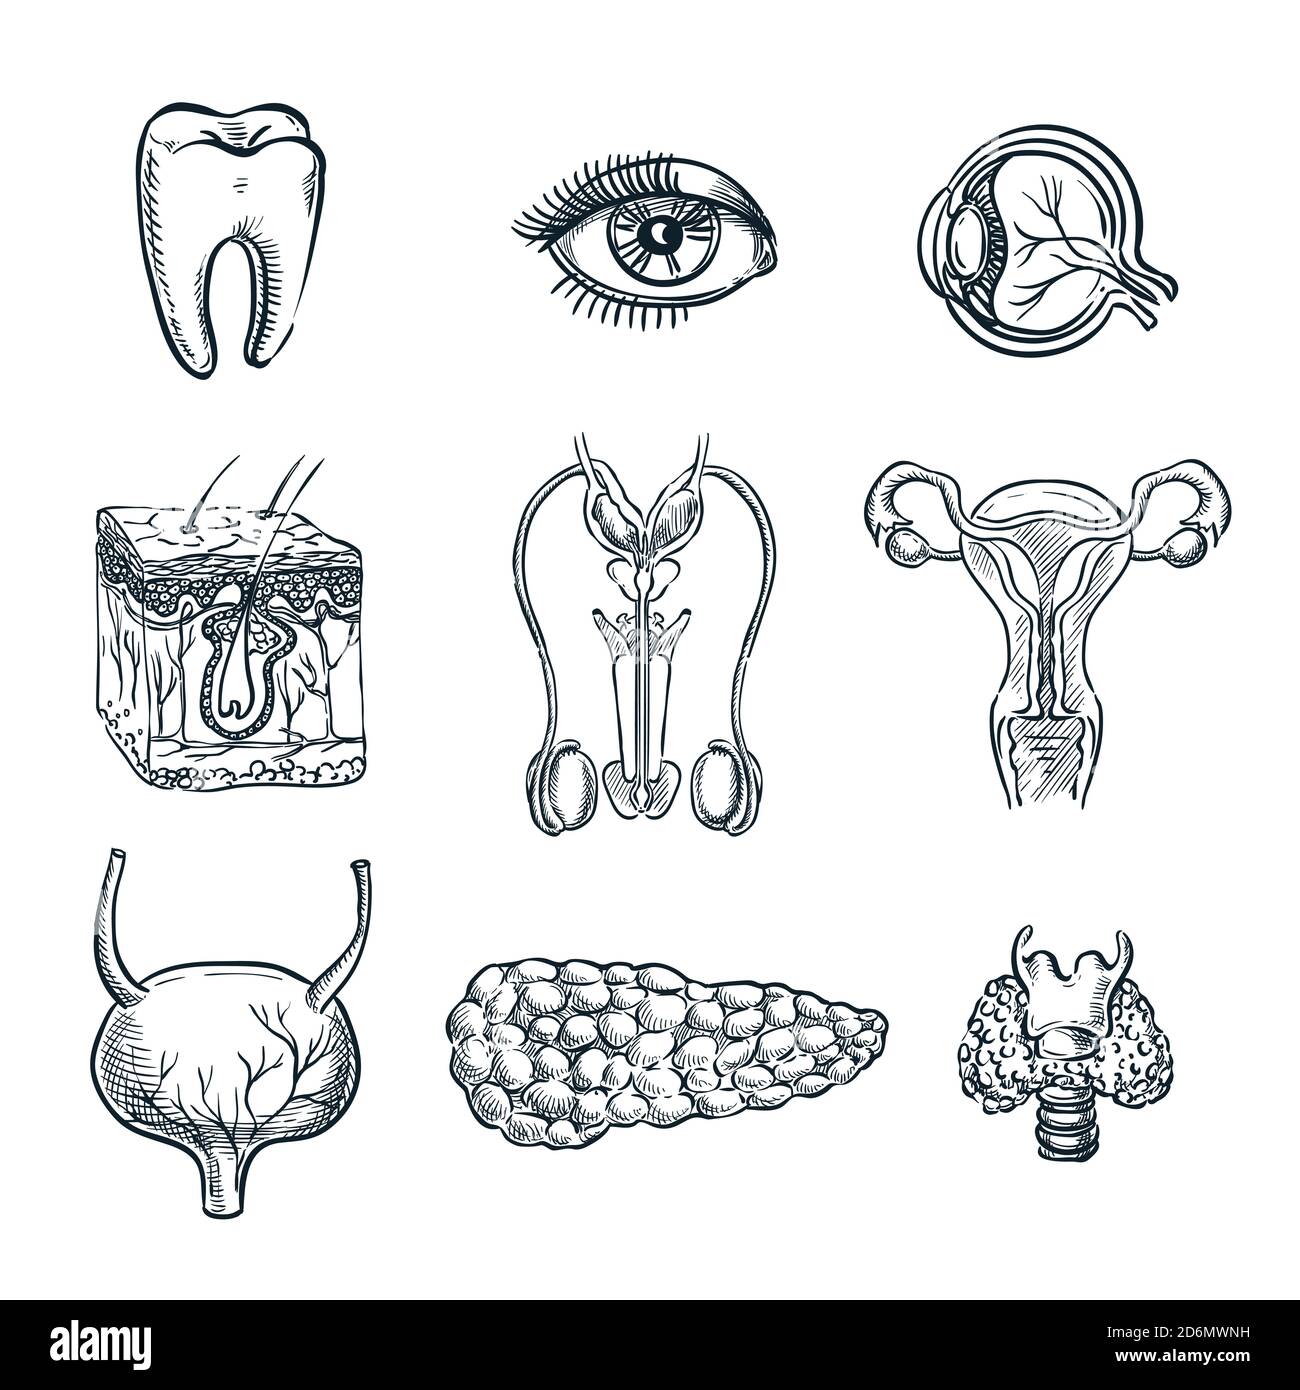 Menschliche innere Organe, Zahn und Auge. Vektorskizze isolierte Illustration. Handgezeichnete Doodle Anatomie Symbole gesetzt. Stock Vektor